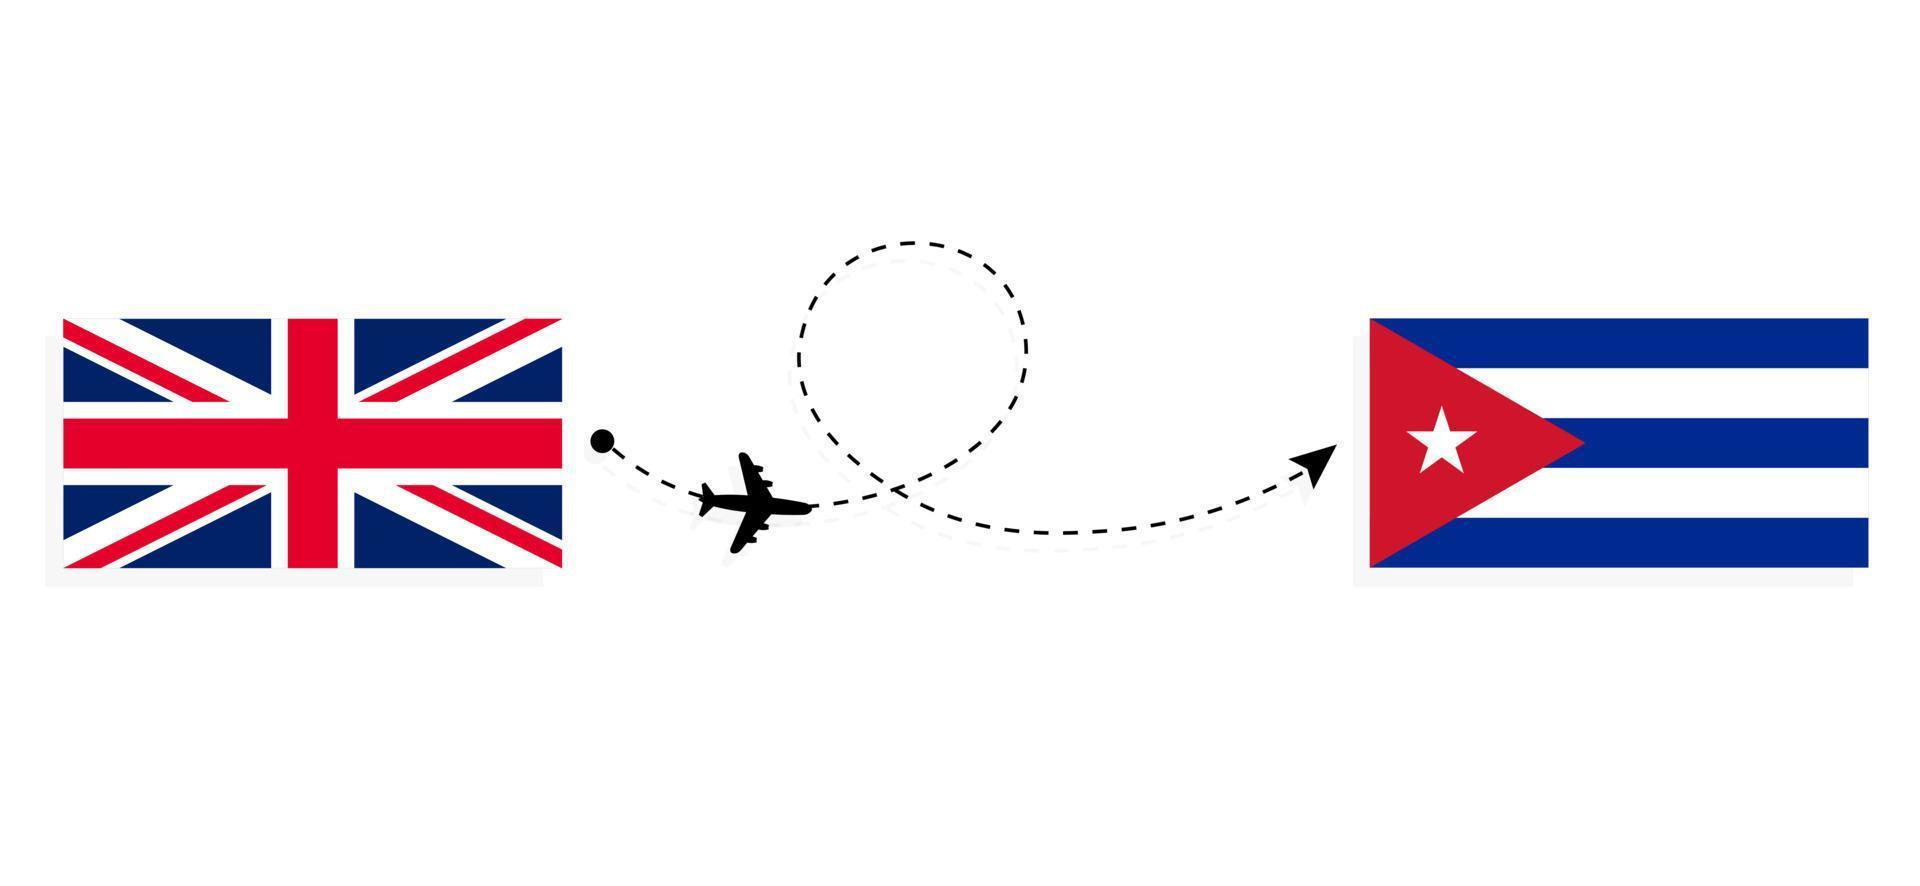 flyg och resor från Storbritannien till Kuba med passagerarflygplan vektor